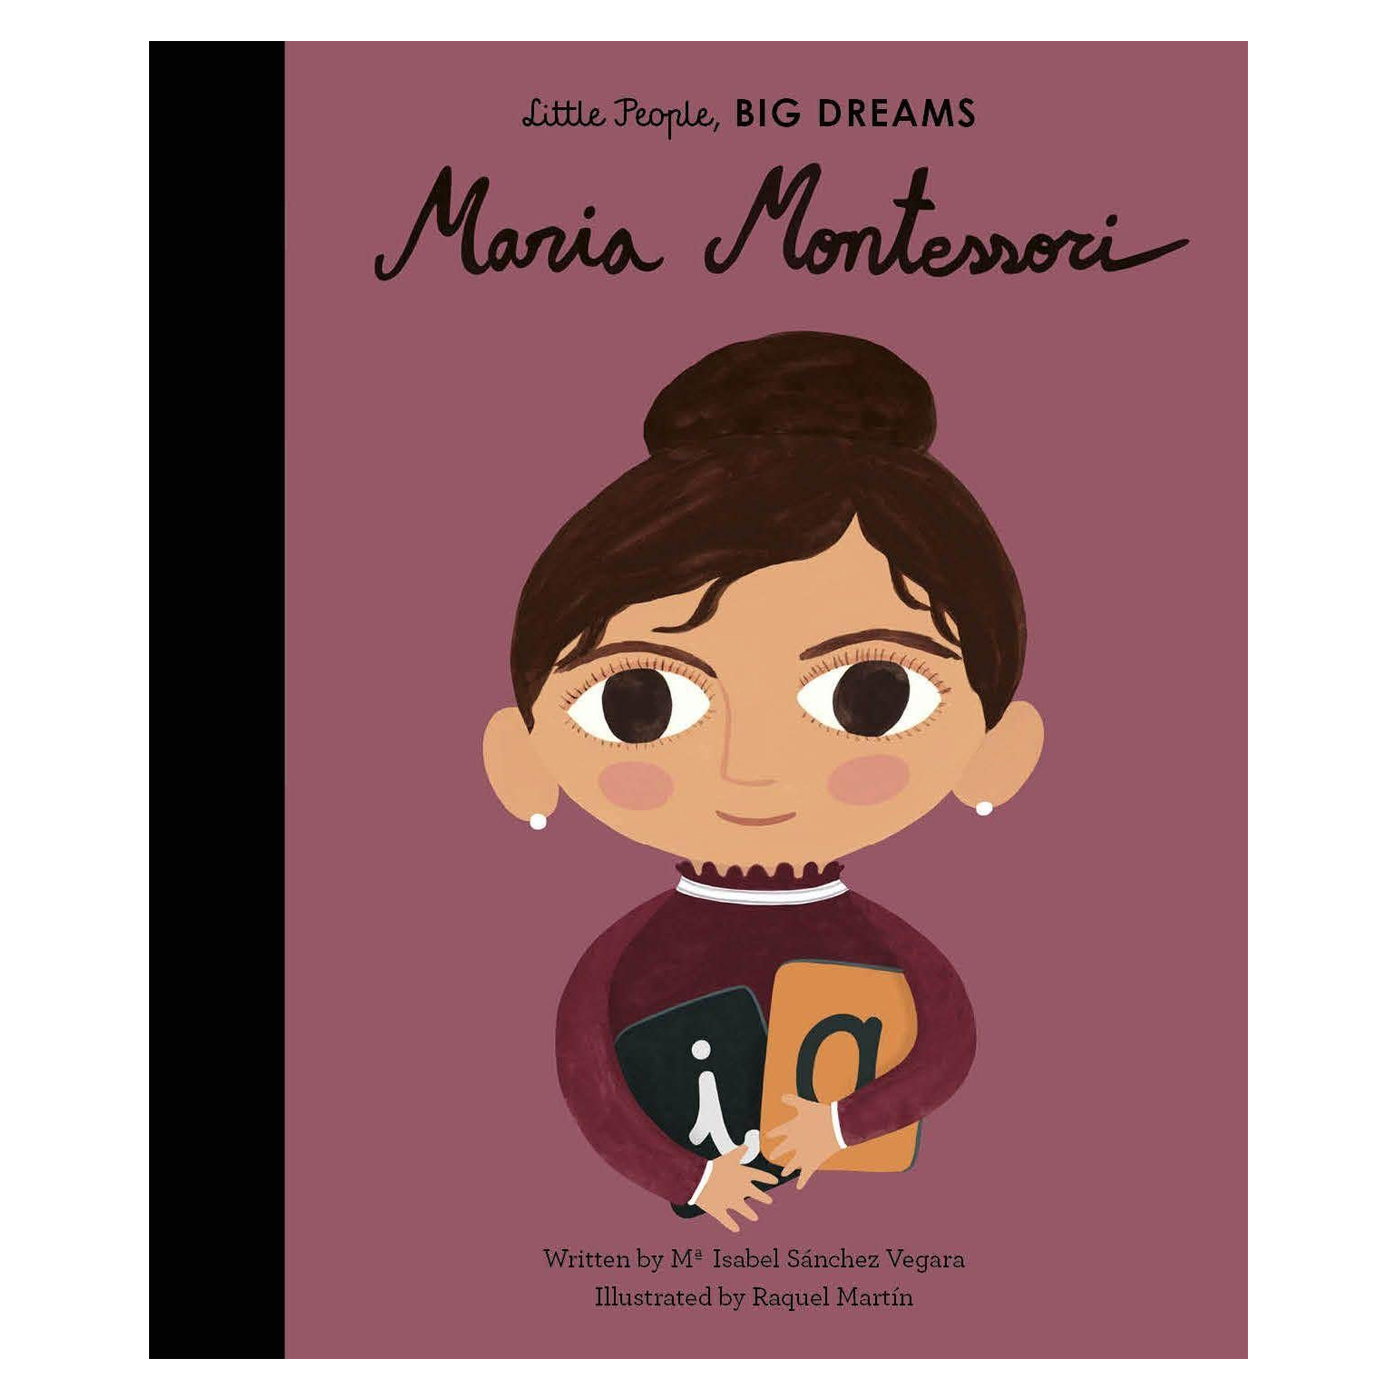  Little People Big Dreams: Maria Montessori